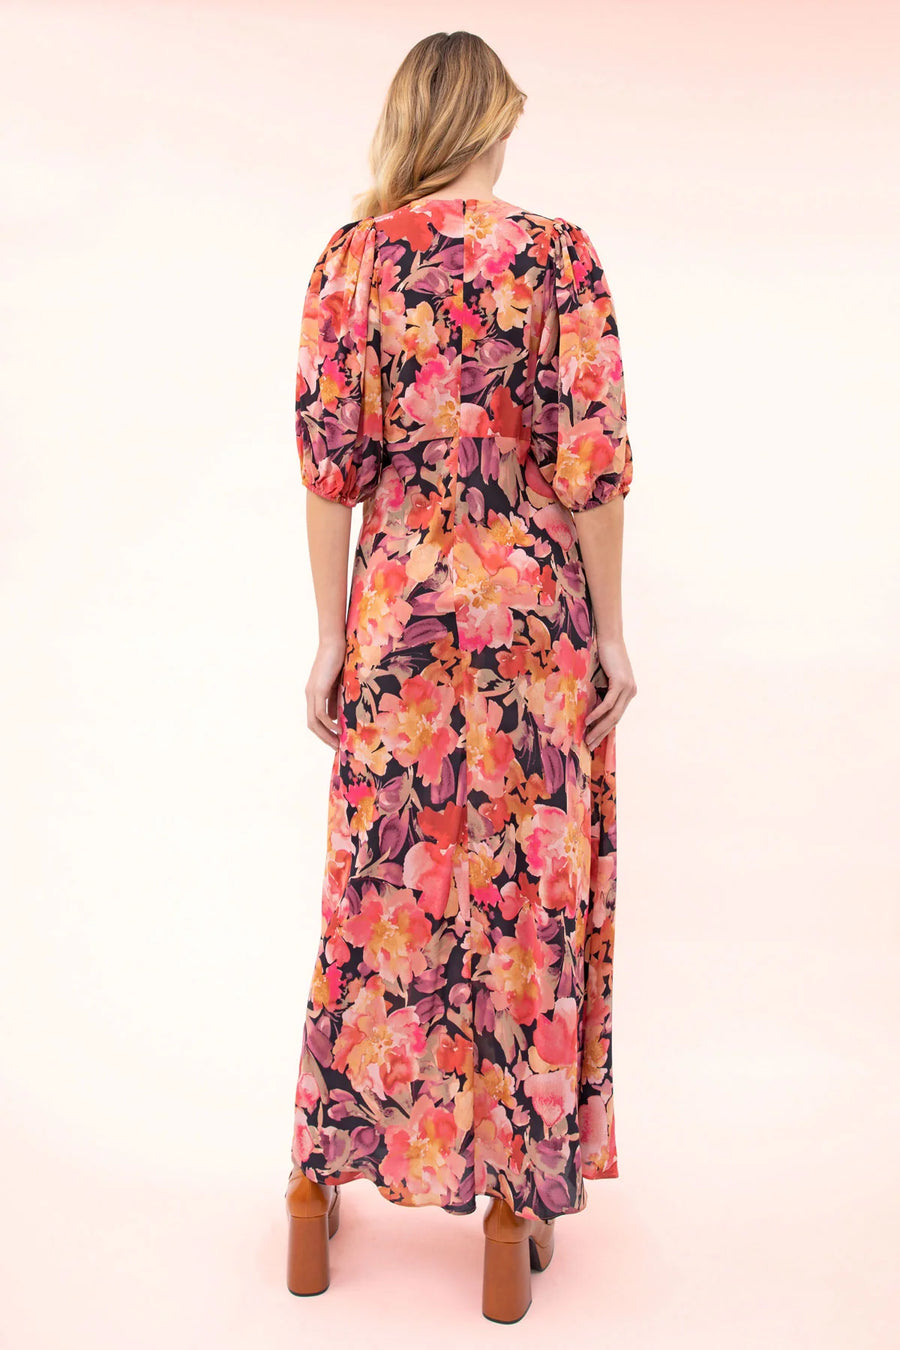 Kachel Ophelia Dress - Valentine